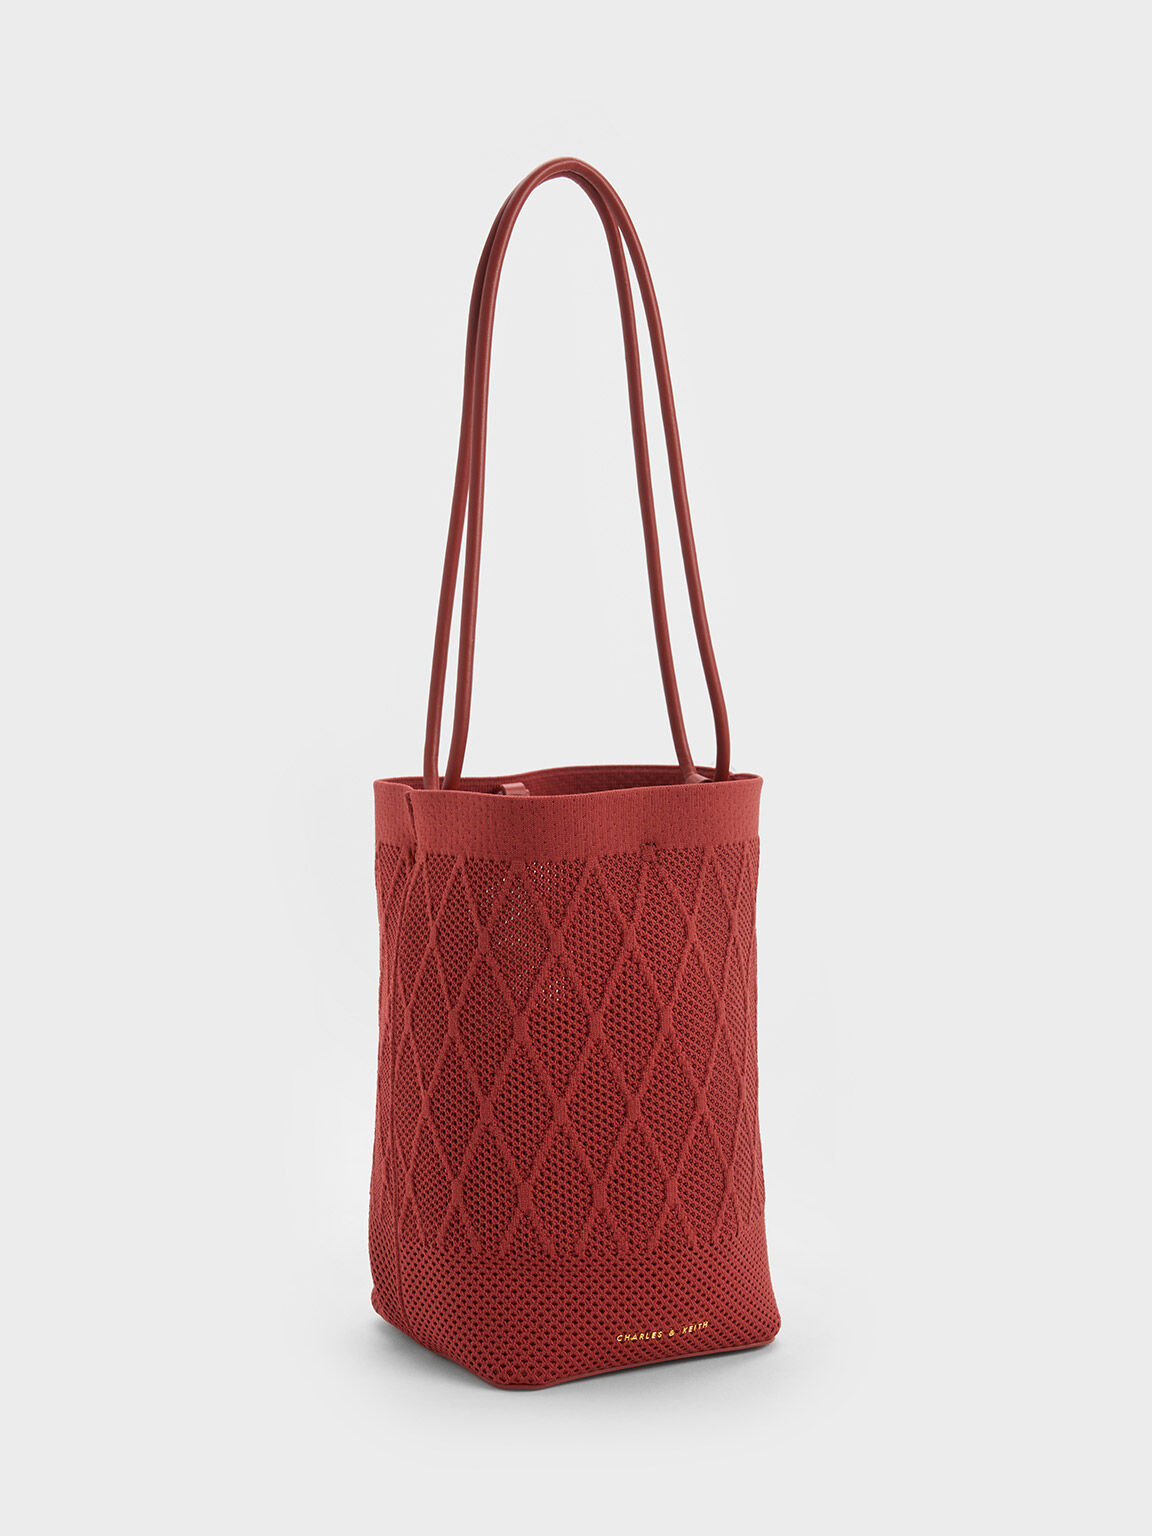 Genoa 菱格針織水桶包, 磚紅色, hi-res